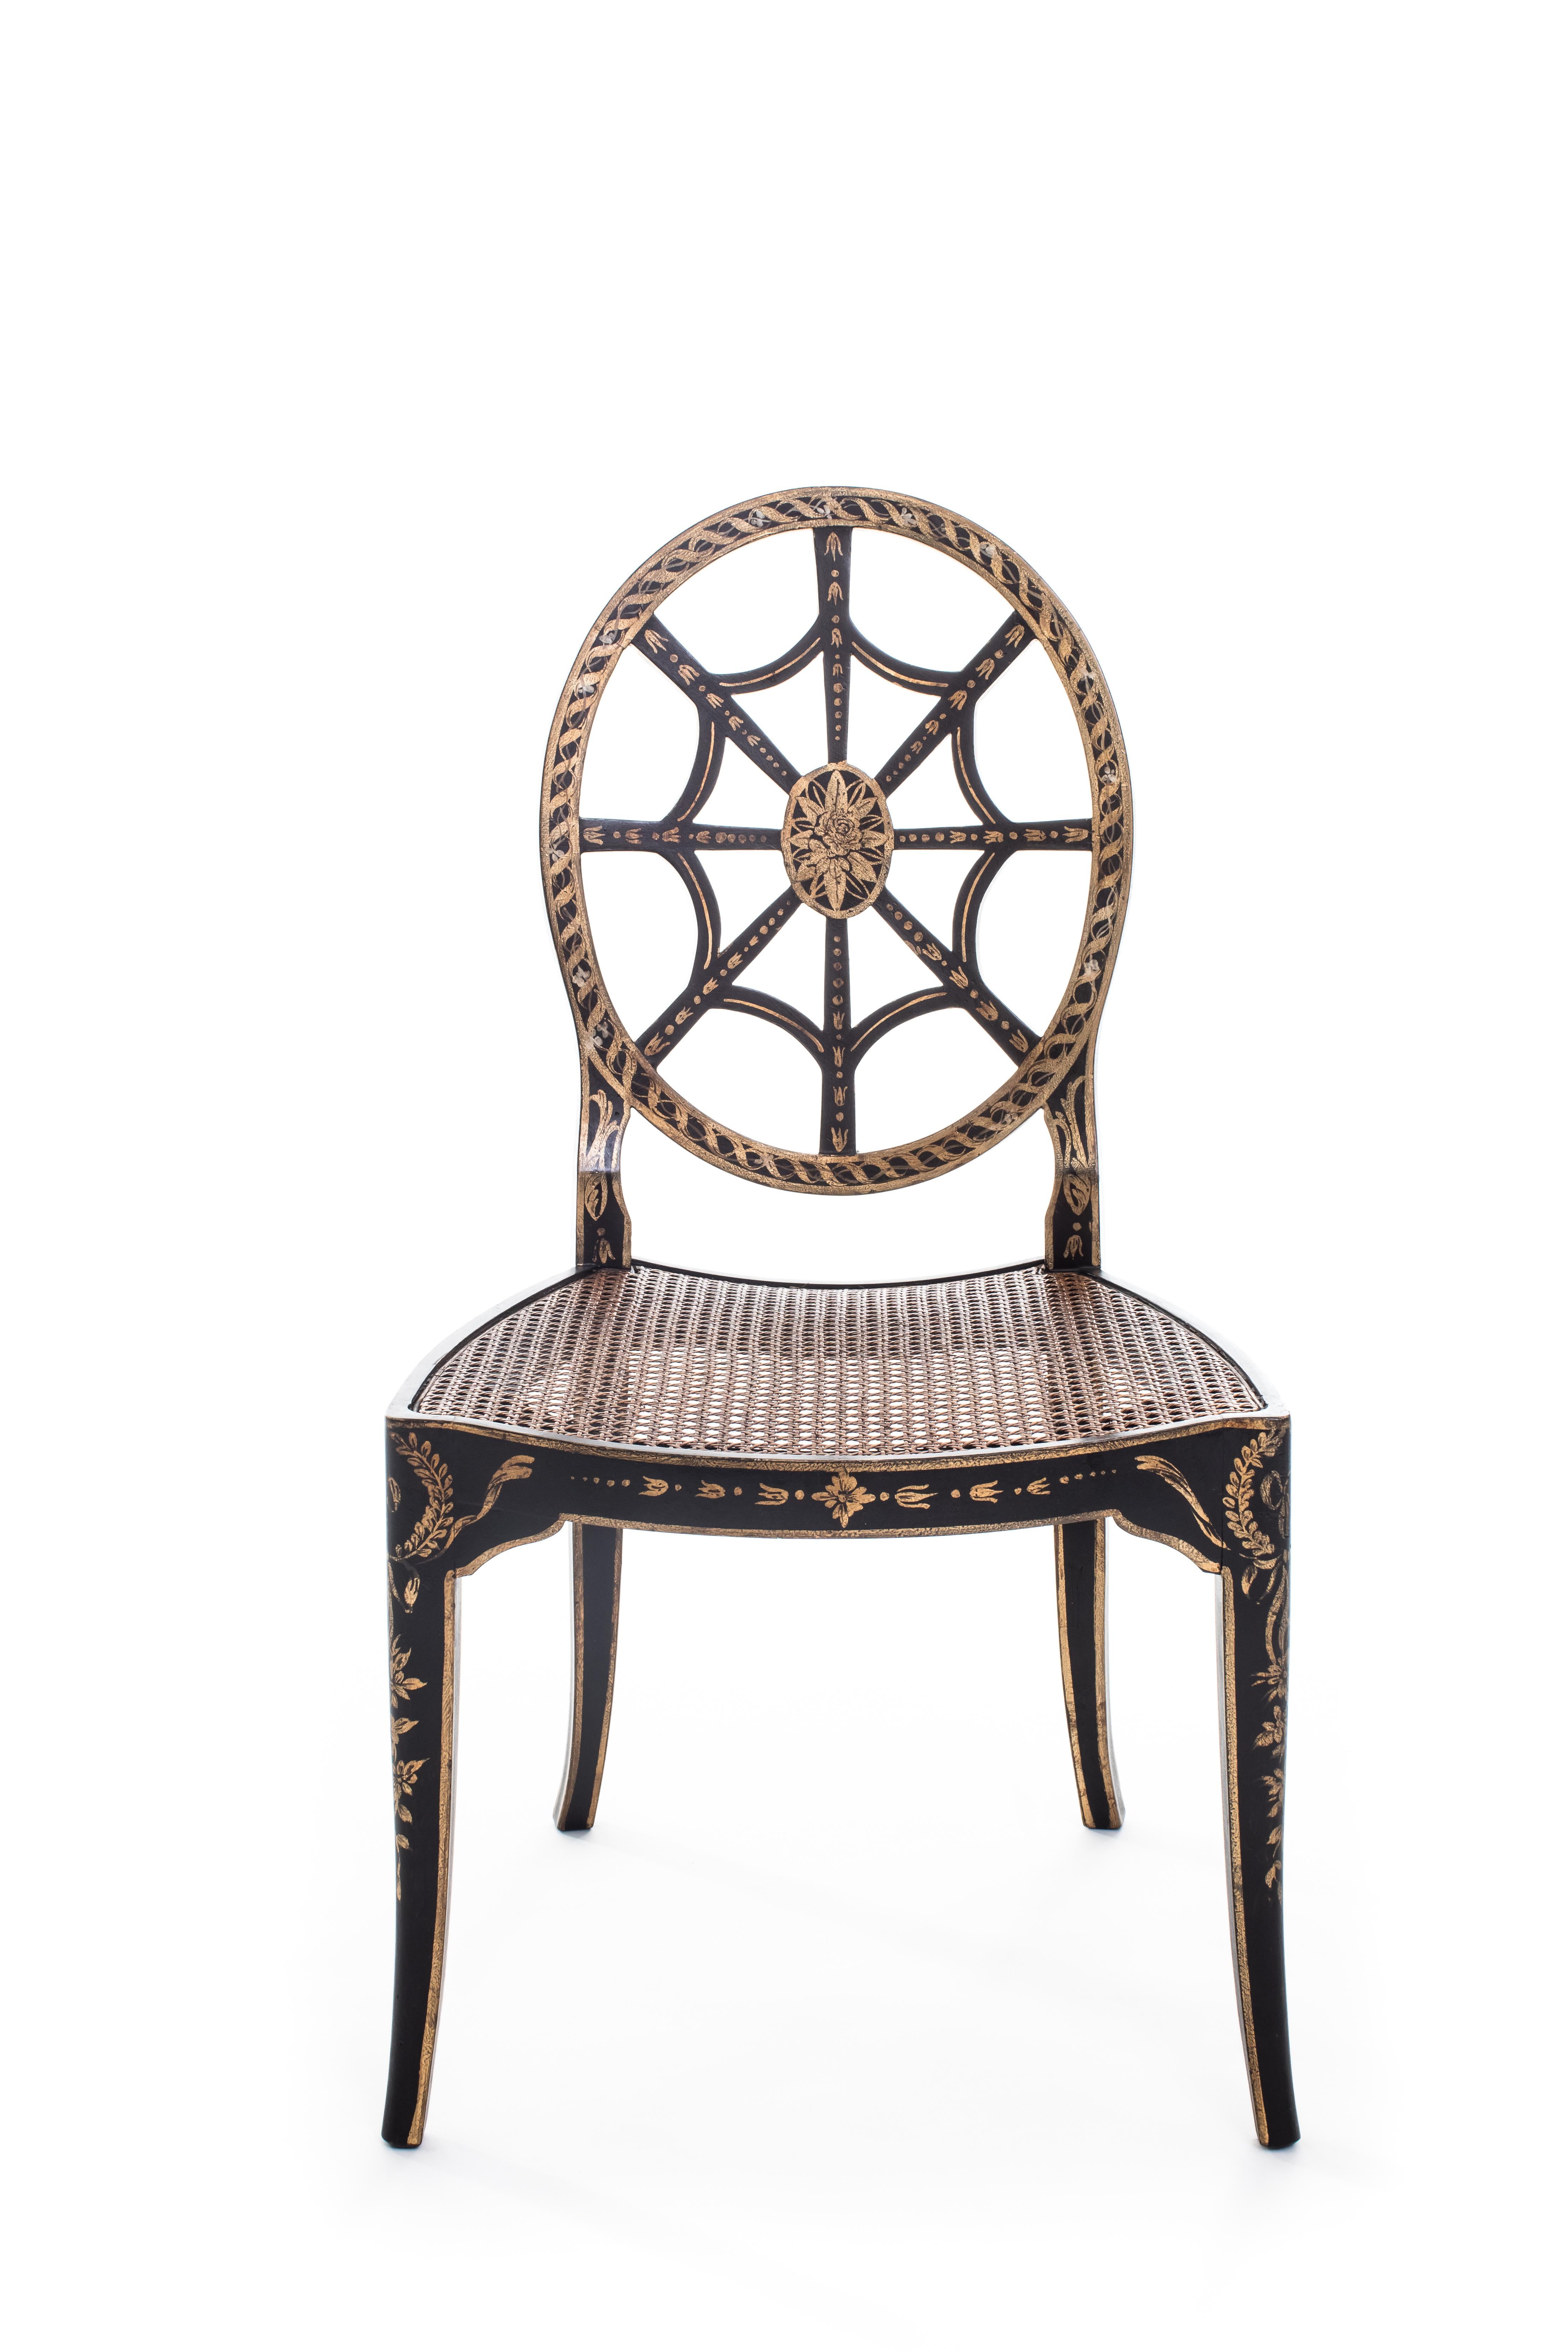 Aus unserer handbemalten Furniture Collection freuen wir uns, Ihnen den Aquileia Chair mit Rohrsitz vorzustellen.
Wir sind uns ziemlich sicher, dass Sie die Stadt Rom bereits kennen, aber Aquileia ist Ihnen vielleicht nicht bekannt! Dieses kleine